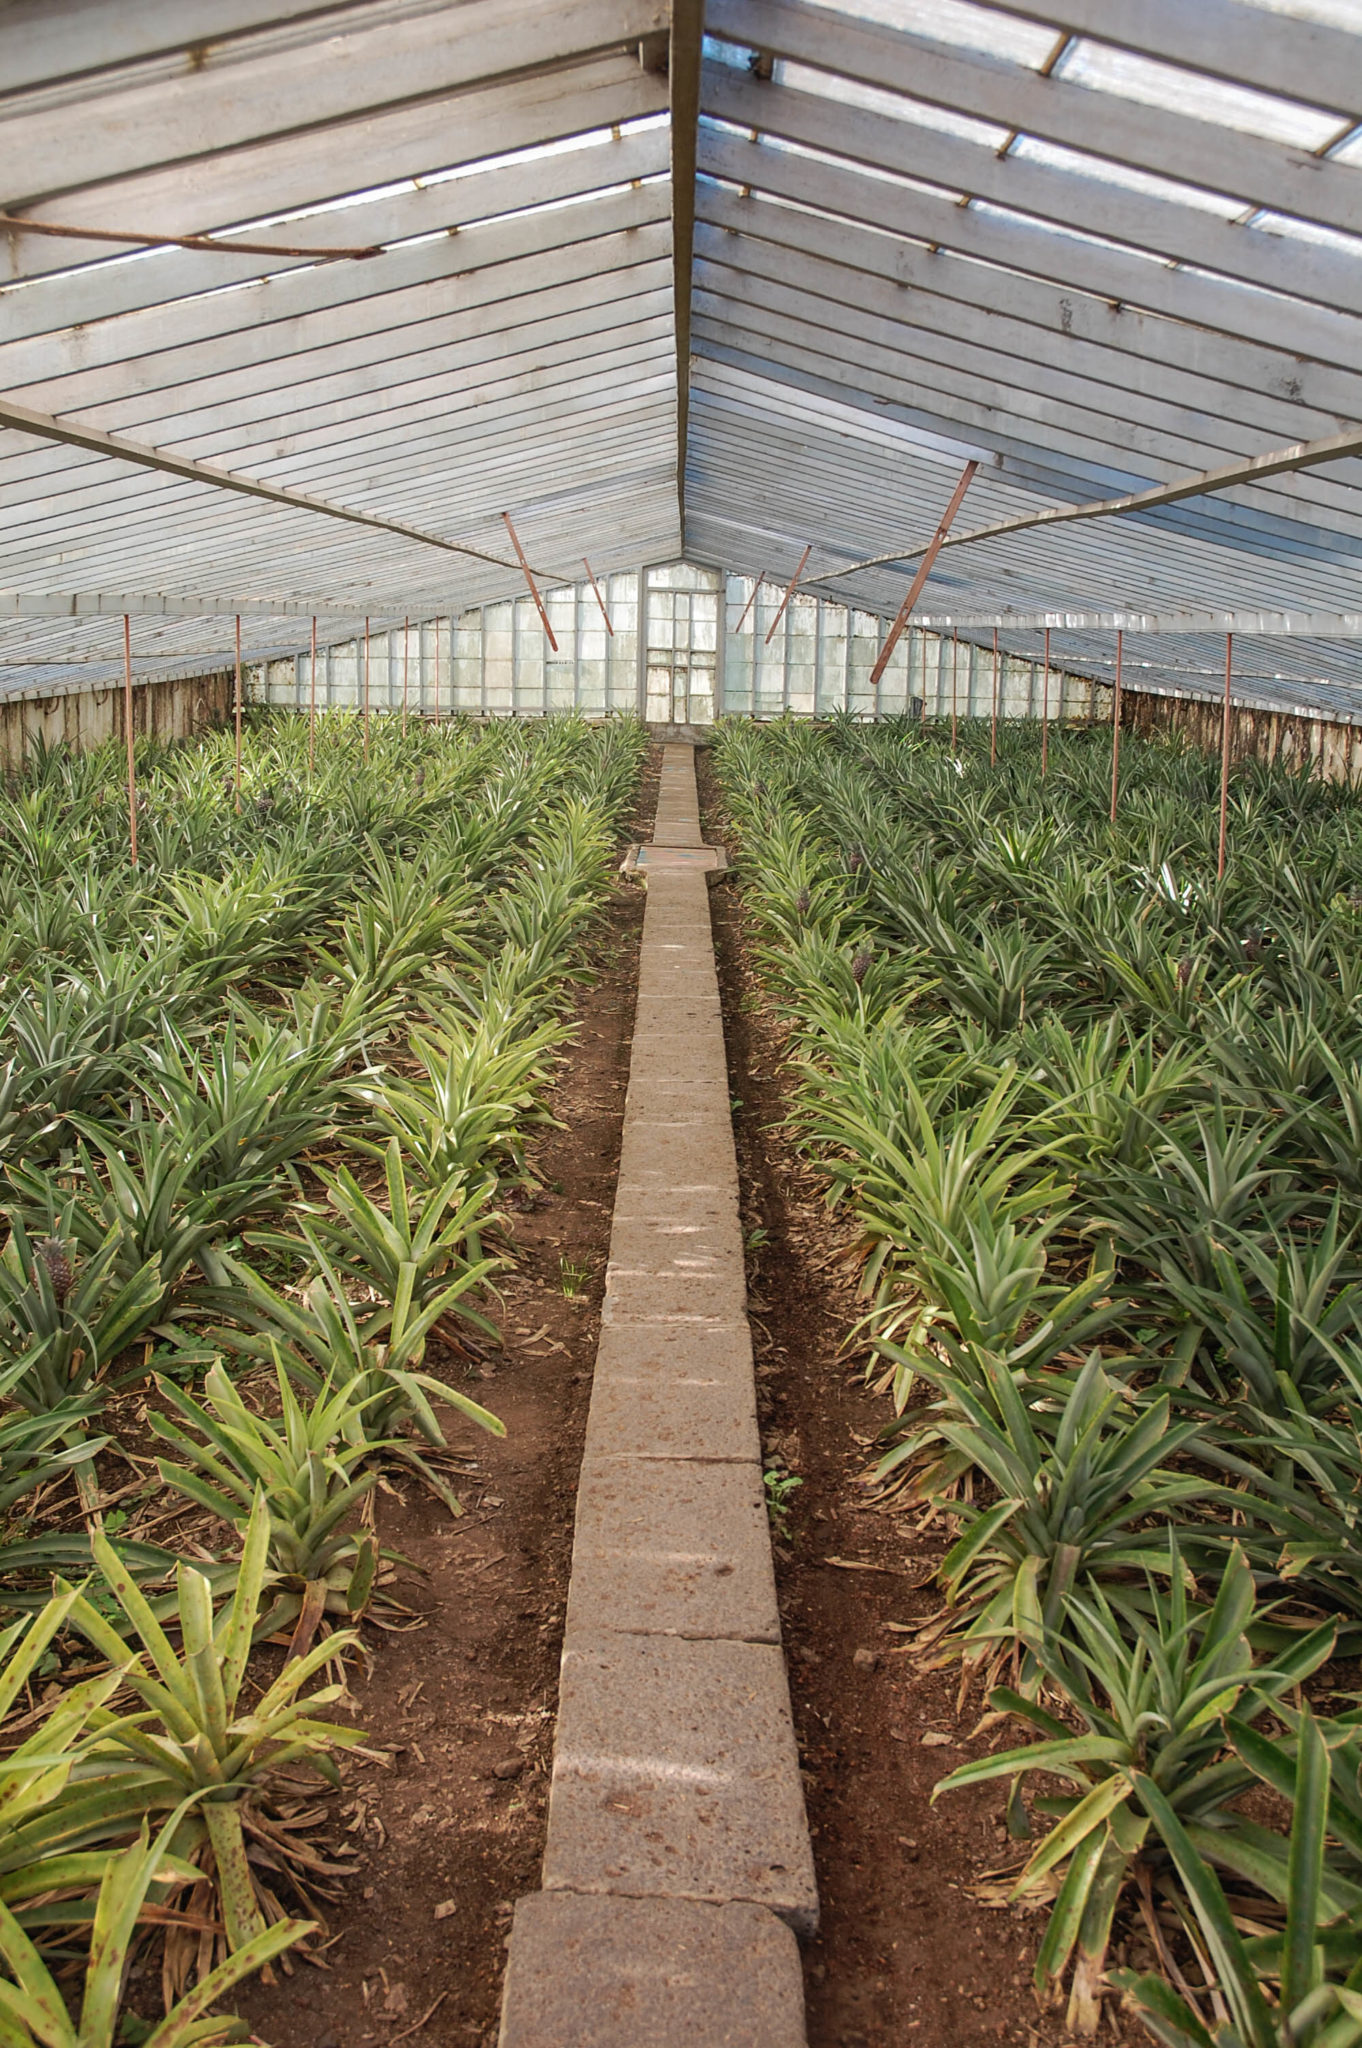 Sao Miguel besitzt als fast einzige europäische Destination eigene Ananasplantagen